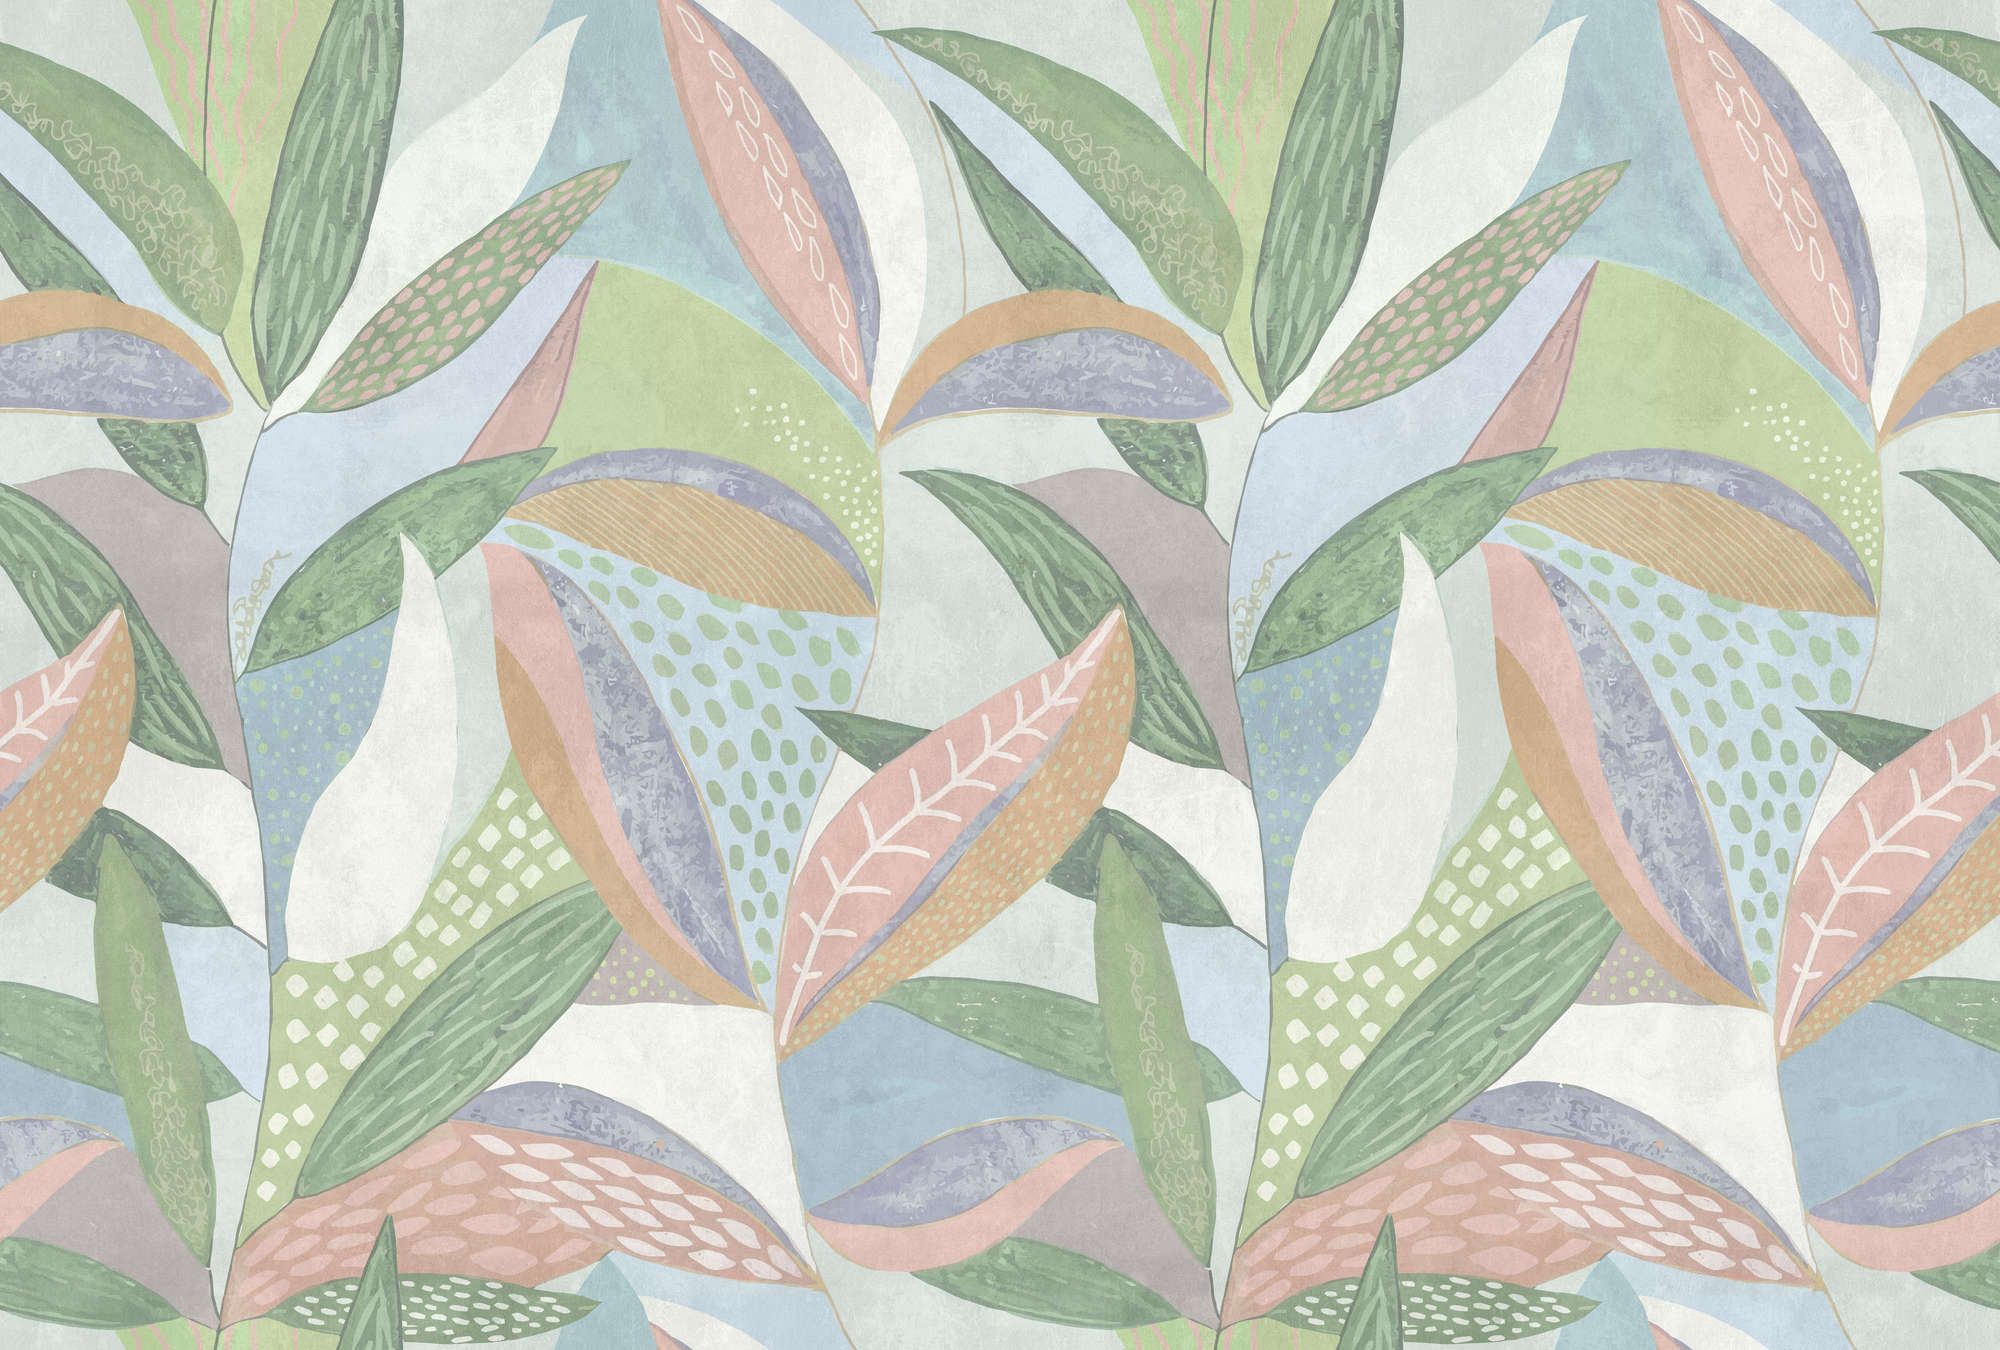             Fotomural »emilia« - Coloreado estampado de hojas en tonos pastel delante de una textura de yeso de hormigón - verde, azul, rosa | Tela no tejida de textura ligera
        